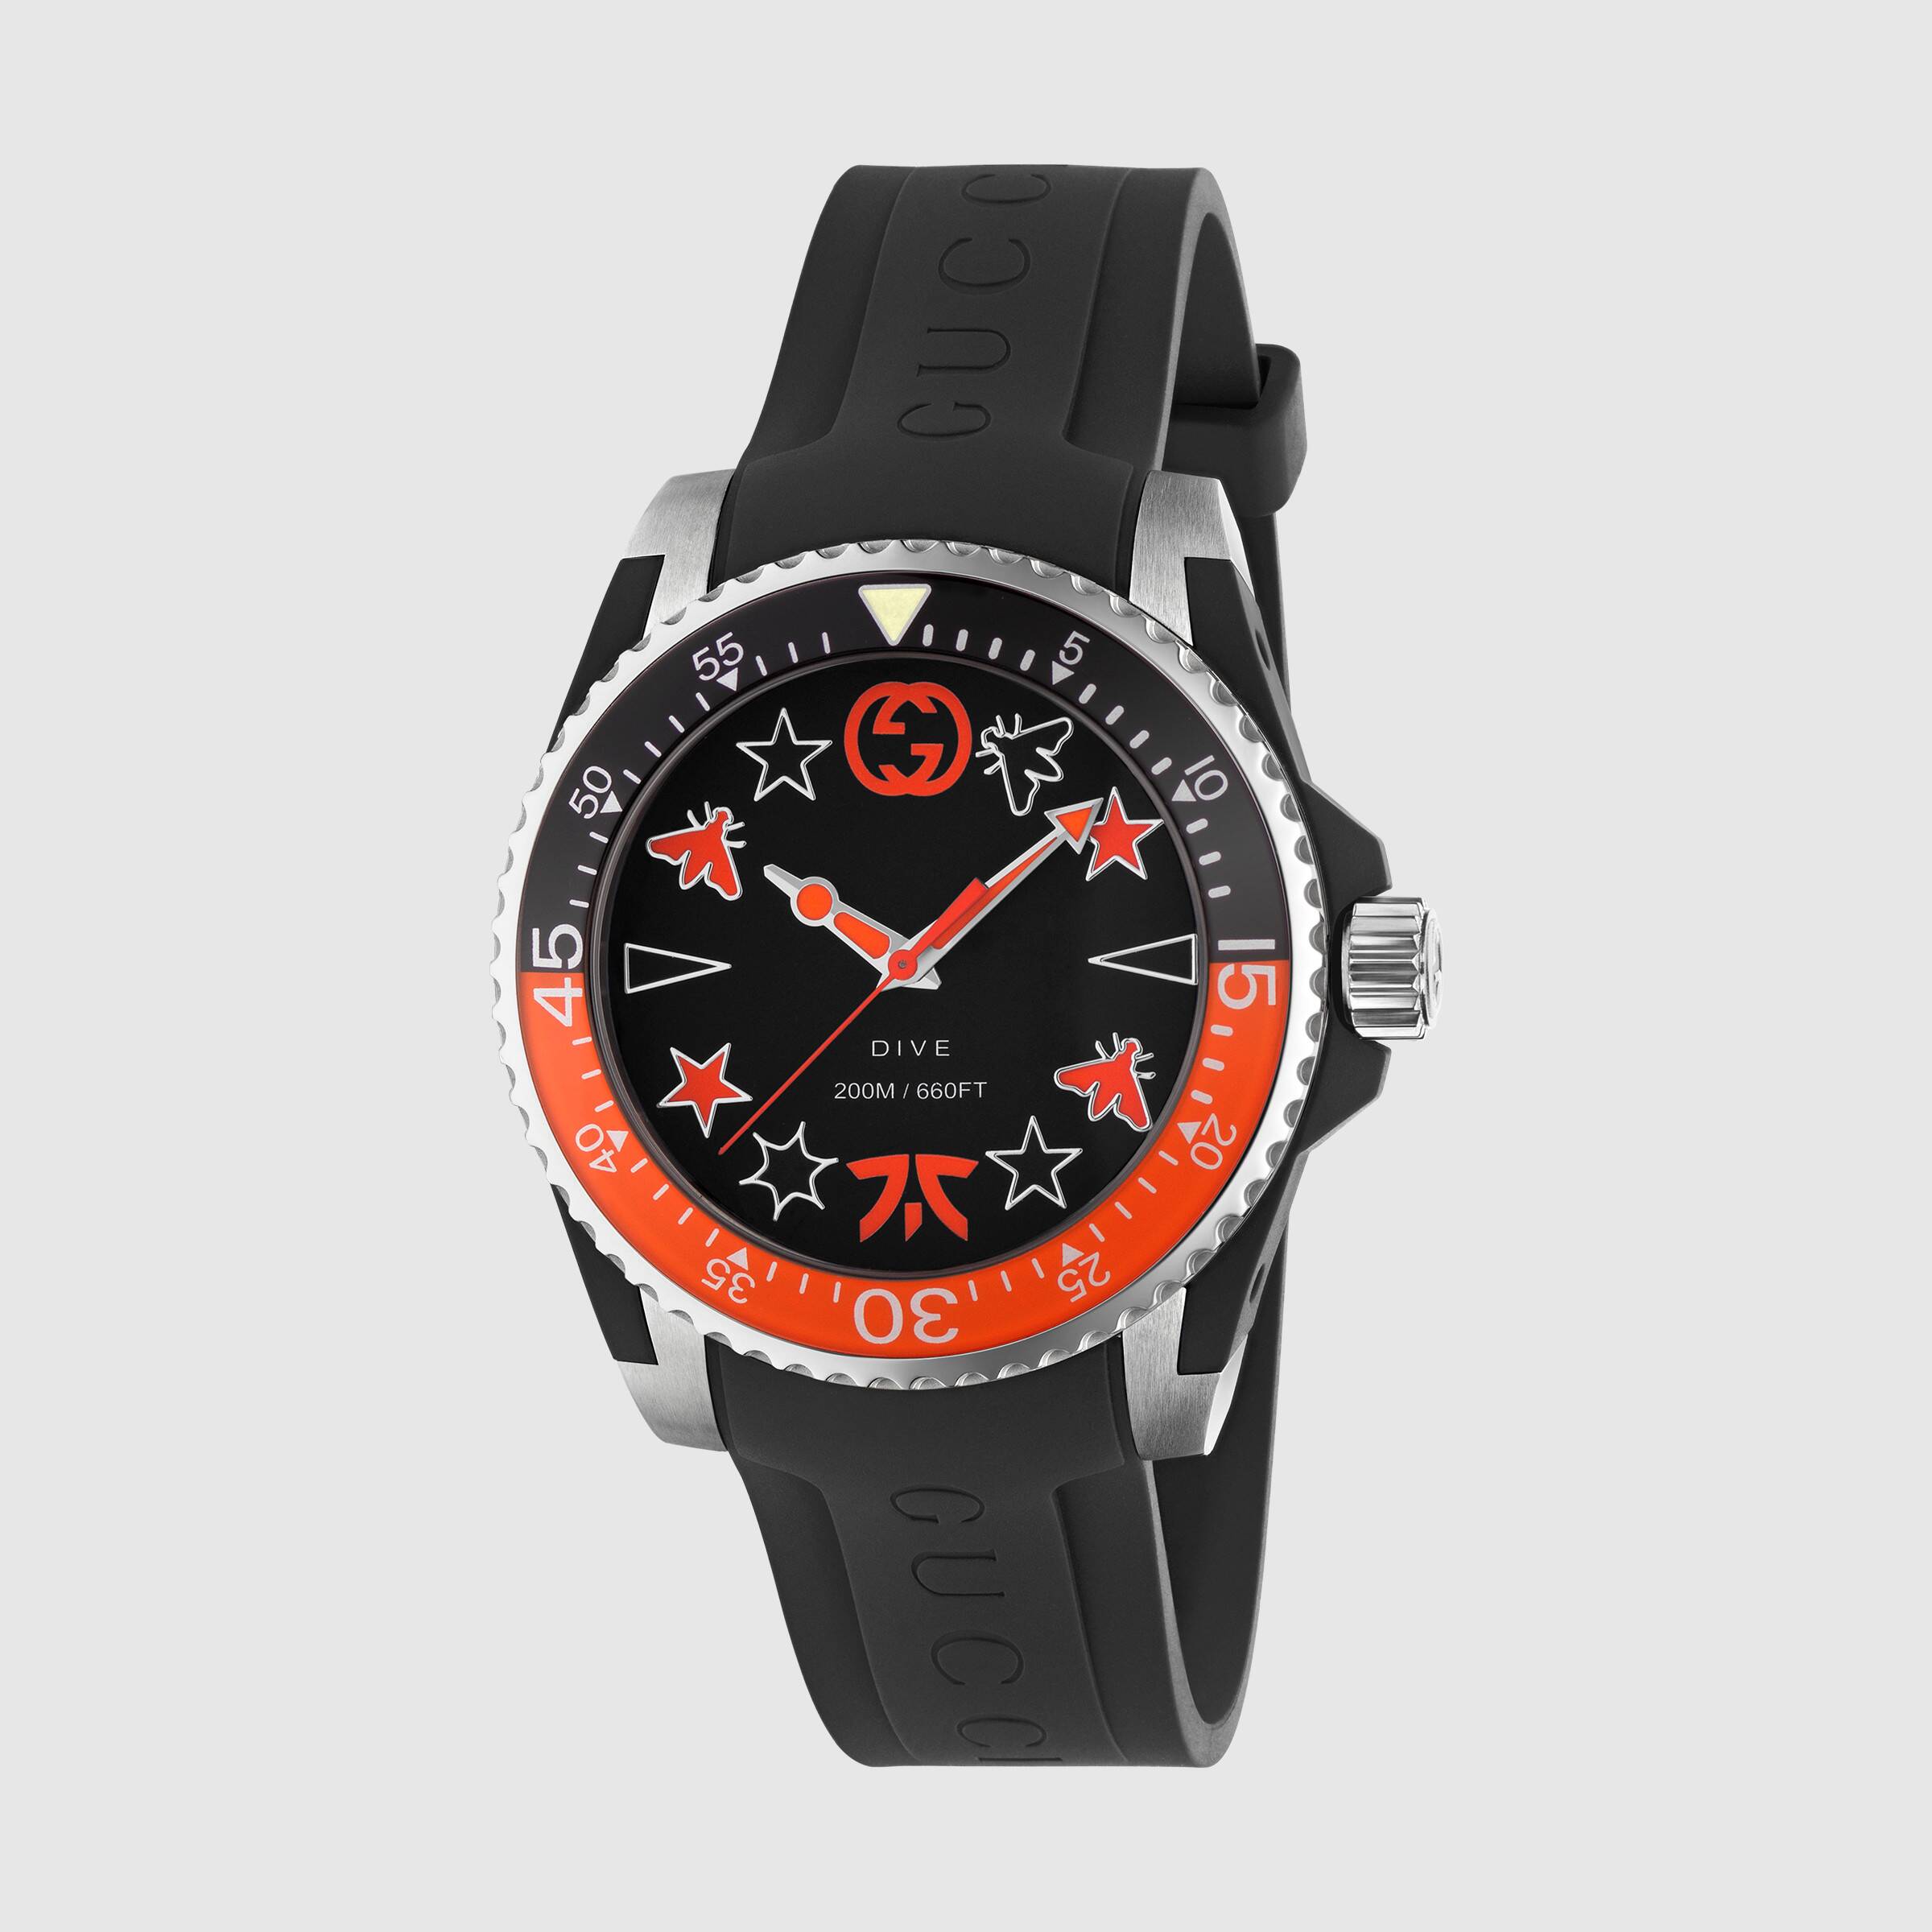 orange gucci watch